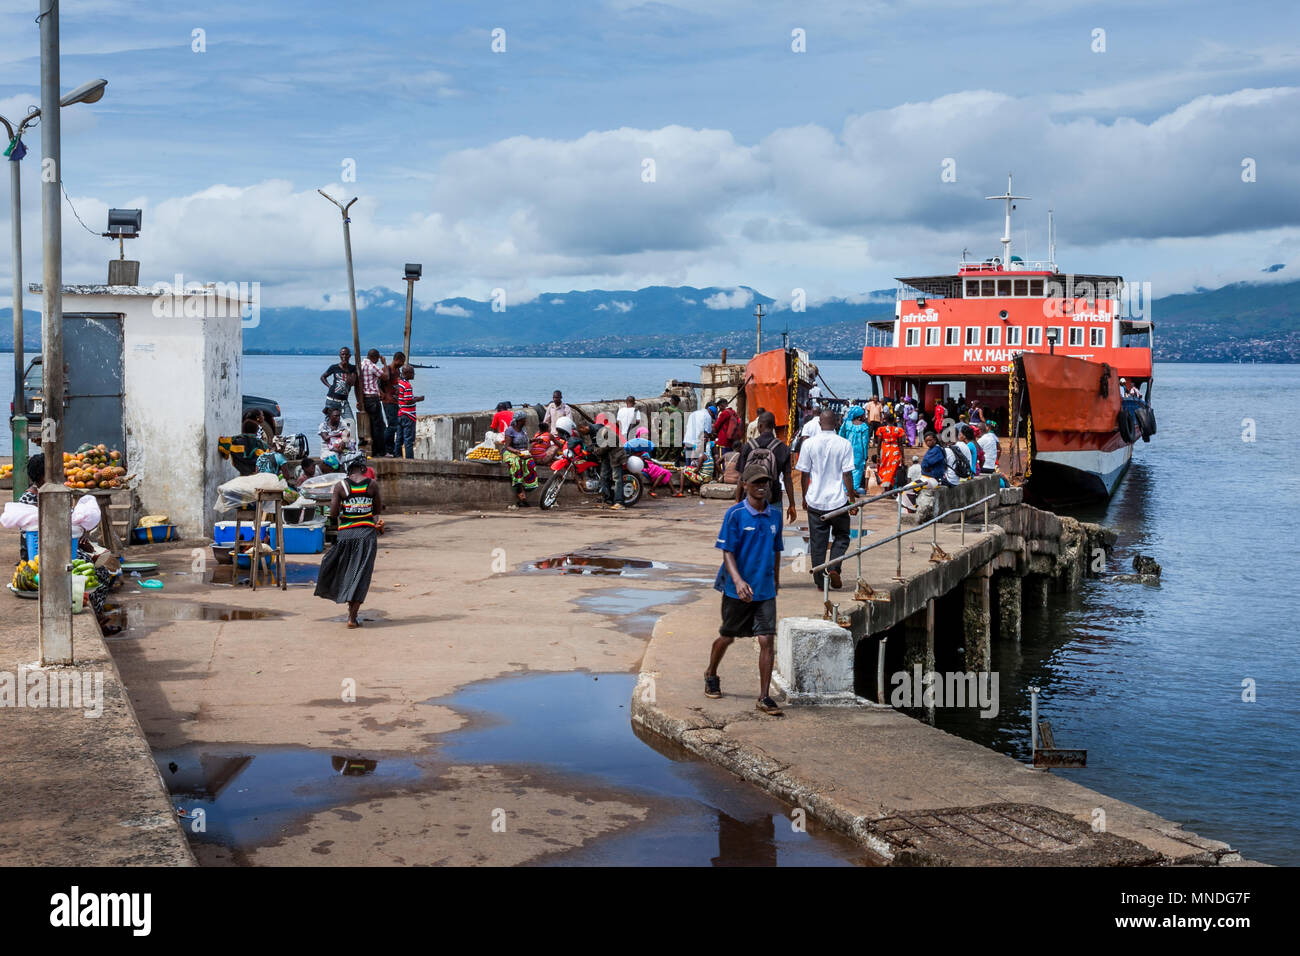 Yongoro, Sierra Leone - Juni 01, 2013: Westafrika, unbekannte Leute aussteigen Von der Fähre zum Hafen der Hauptstadt Freetown Sierra Leone Stockfoto